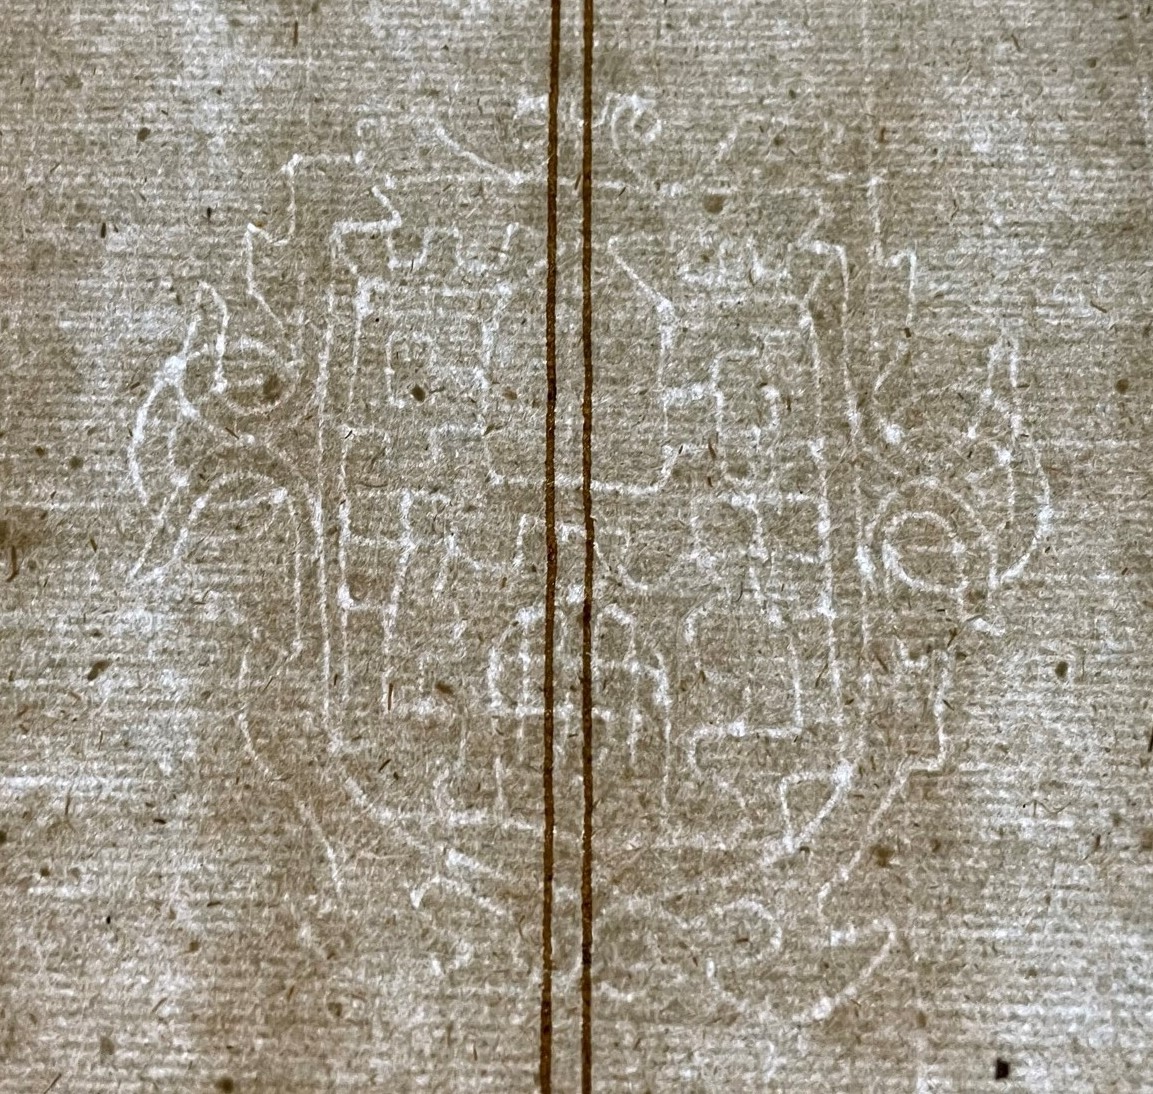 Zu sehen ist das Wasserzeichen Wappen auf einem Papierblatt mithilfe der Durchlichtfolie.